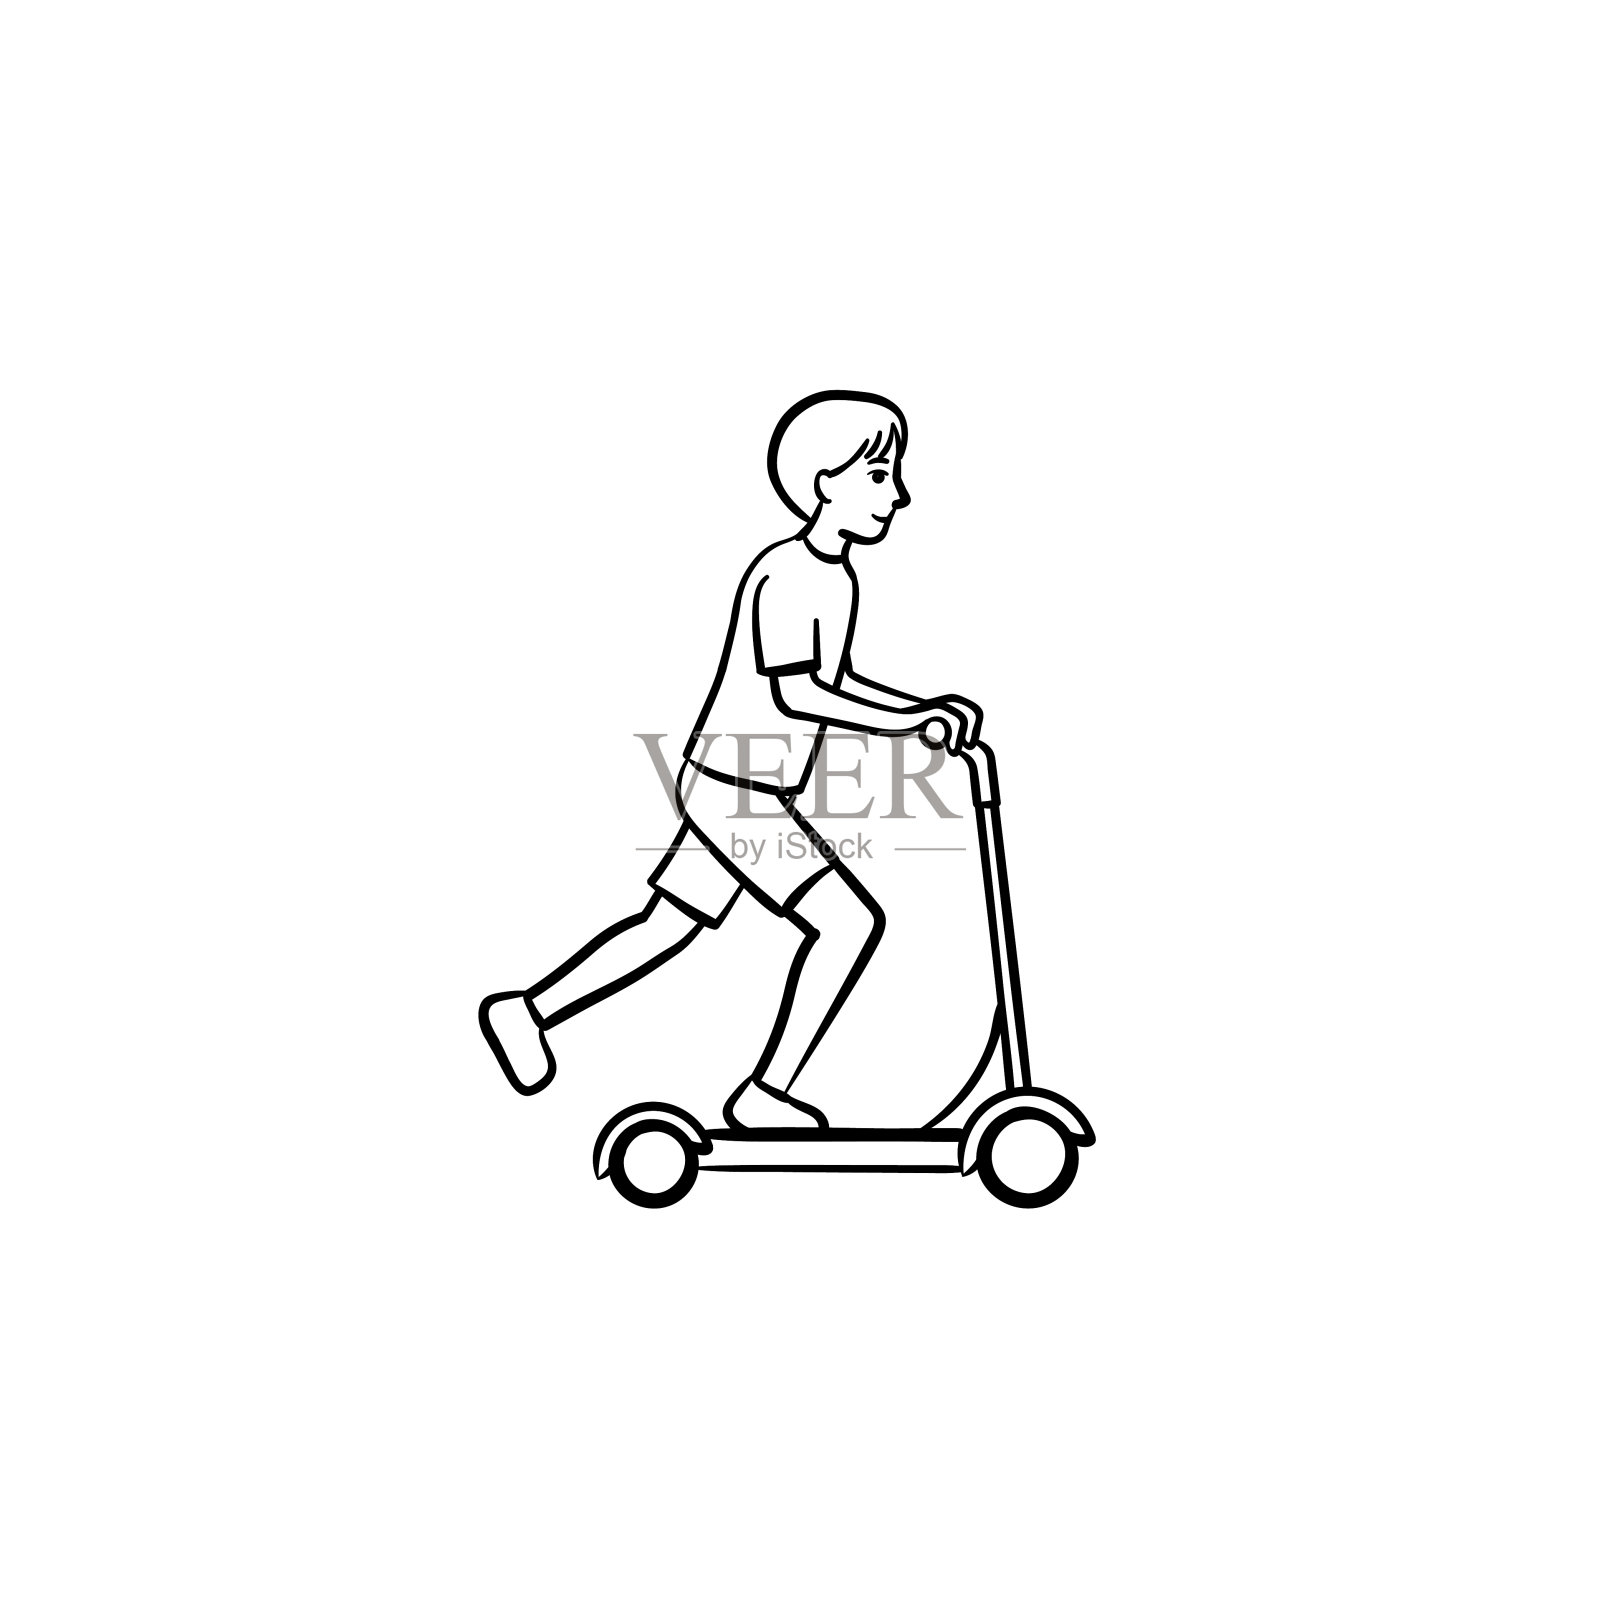 男孩骑踢踏板车手绘素描图标插画图片素材